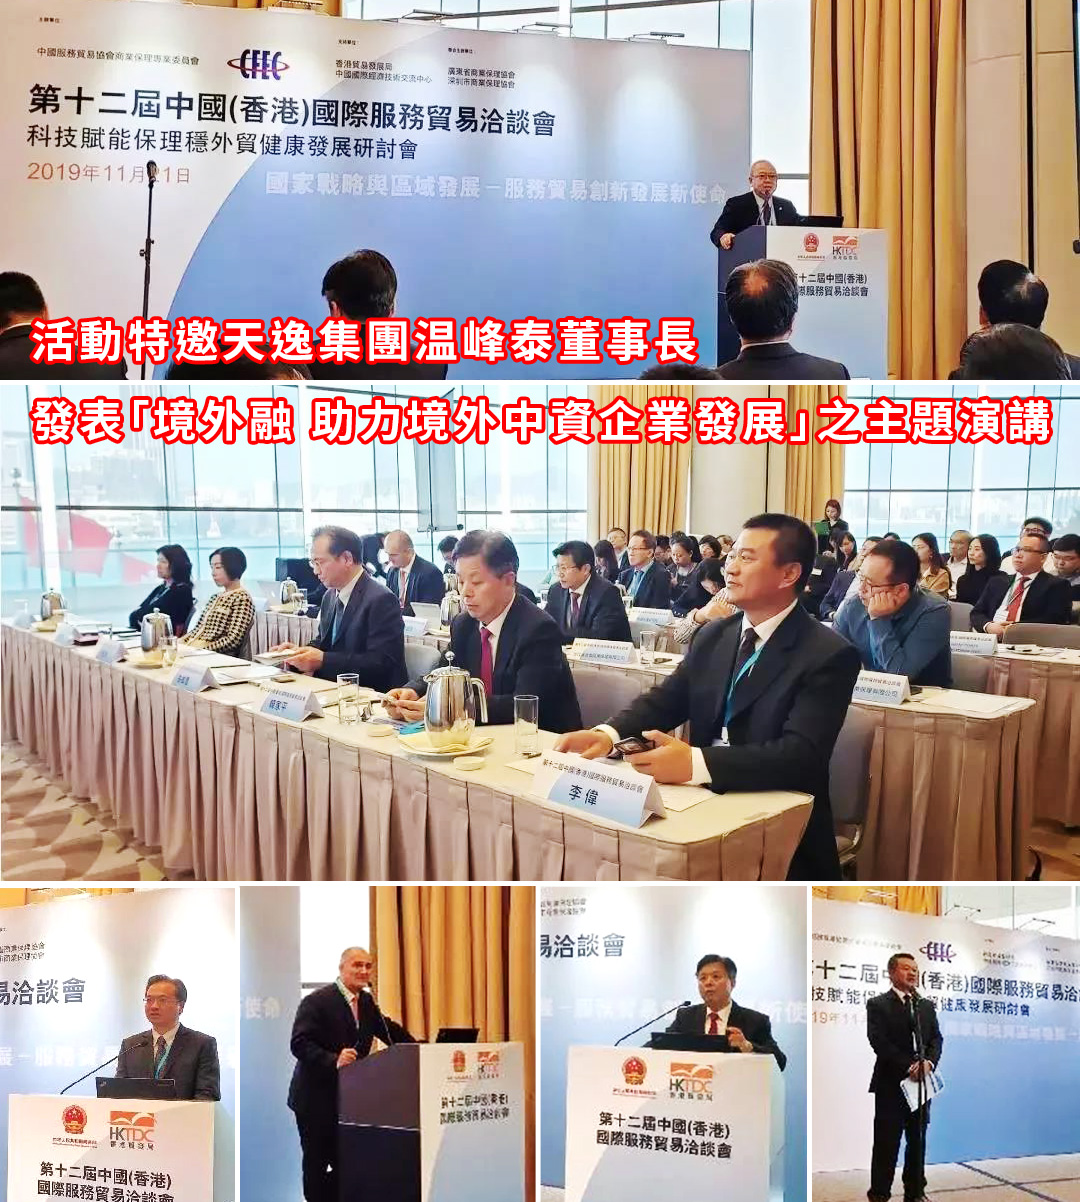 天逸集团董事长温峰泰出席第十二届中国（香港）国际服务贸易洽谈会并发表主题演讲